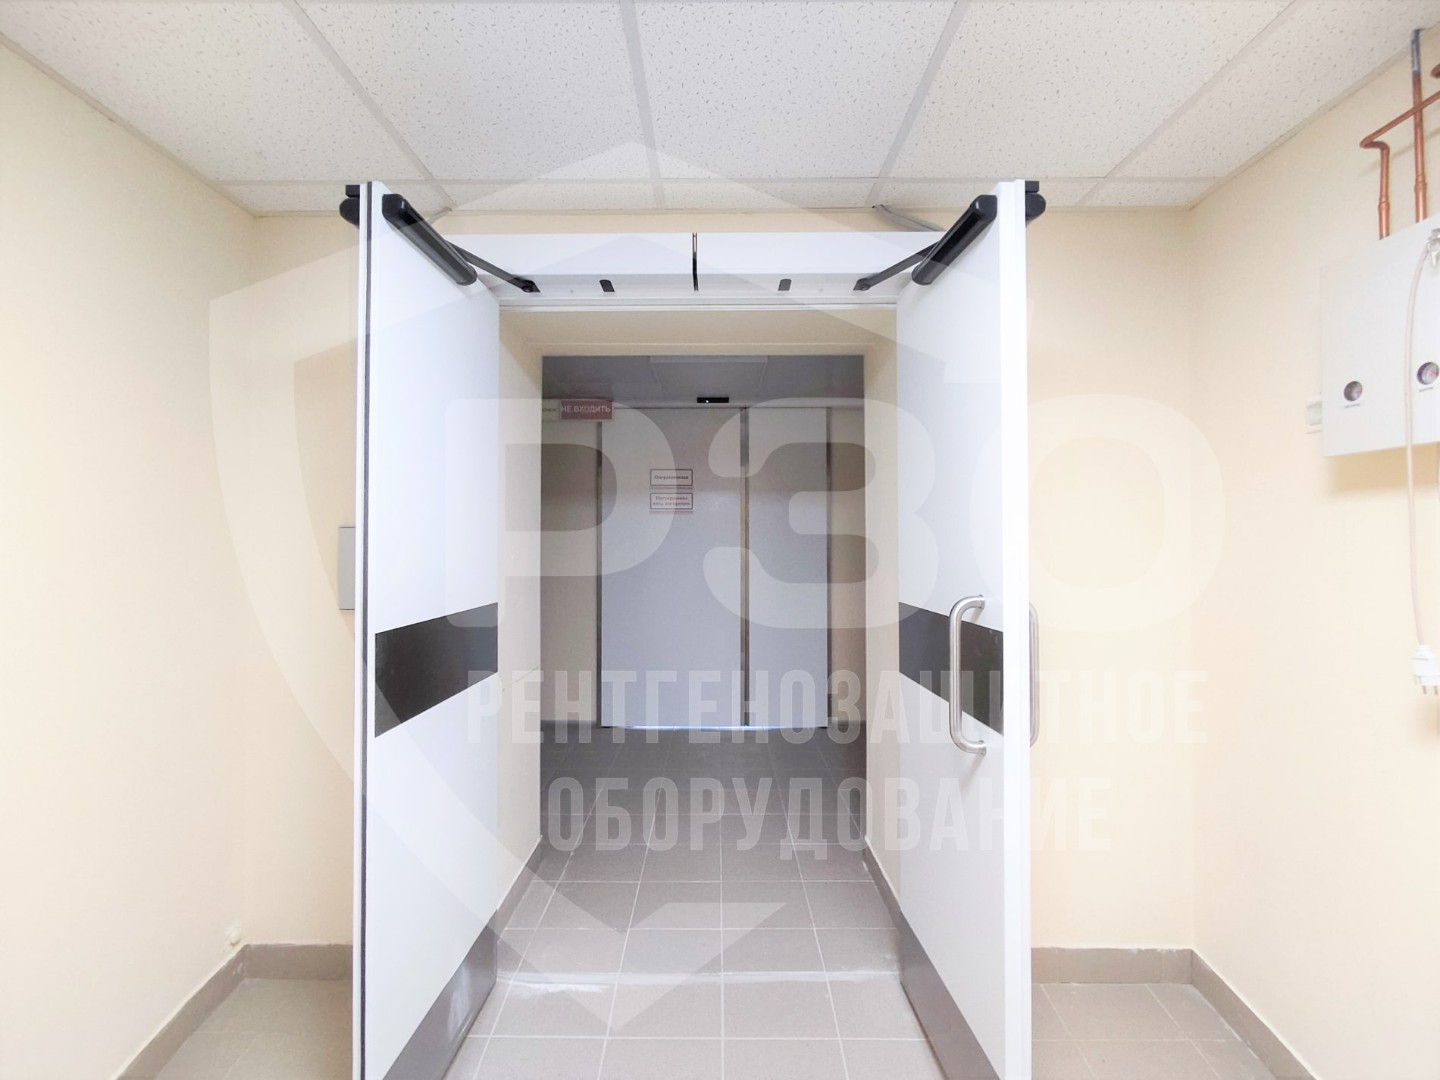 Дверь рентгенозащитная автоматическая распашная